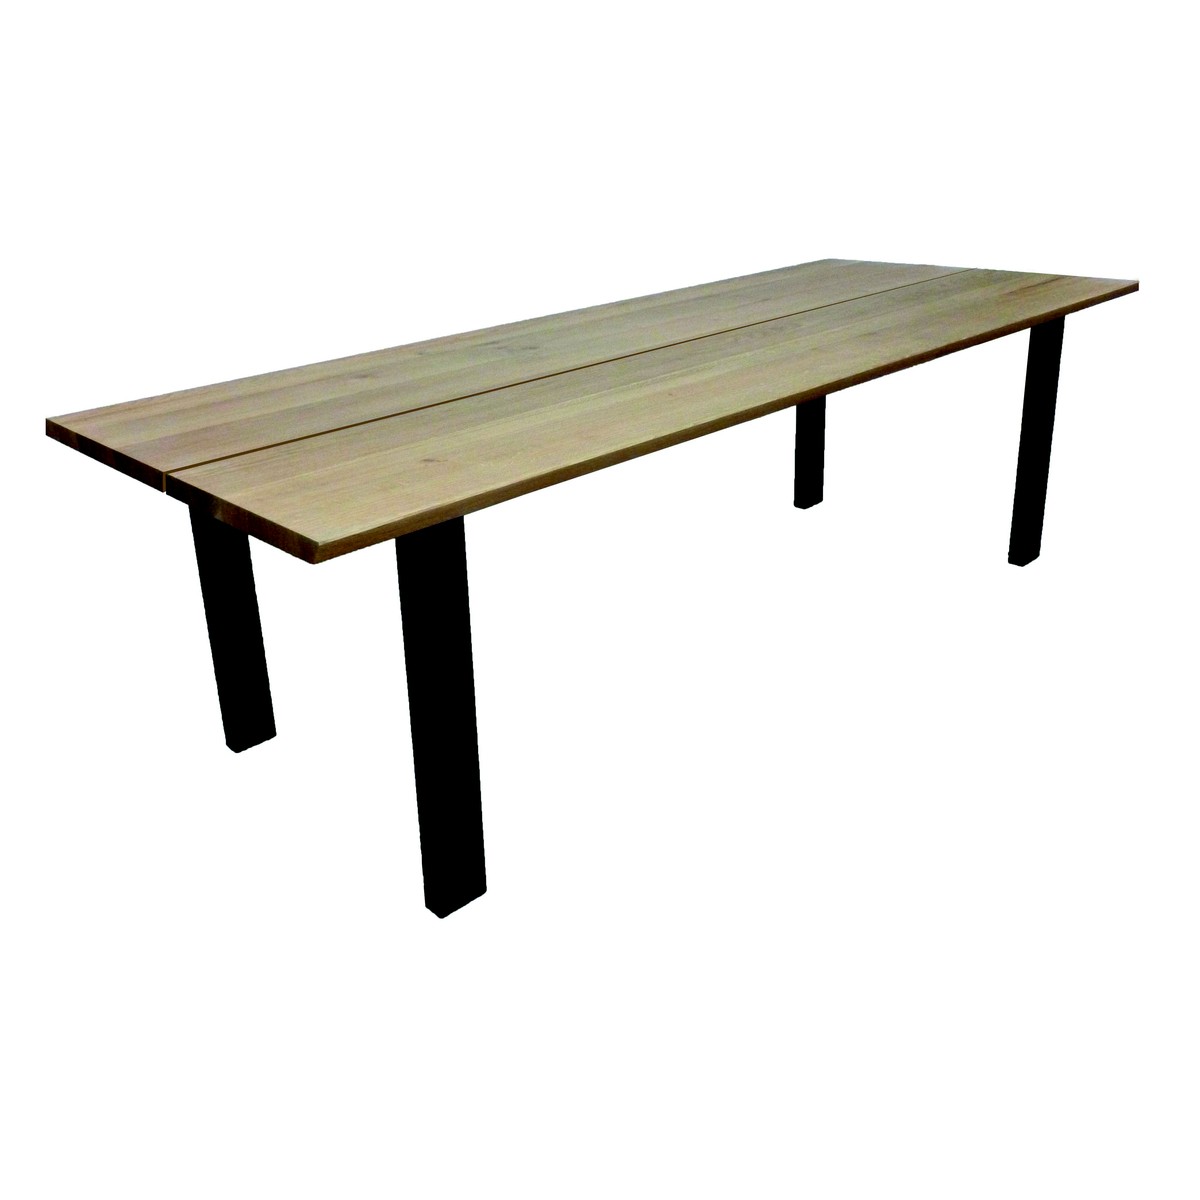   Table haute Jeff Droit ouvert rectangulaire  160x100x90cm